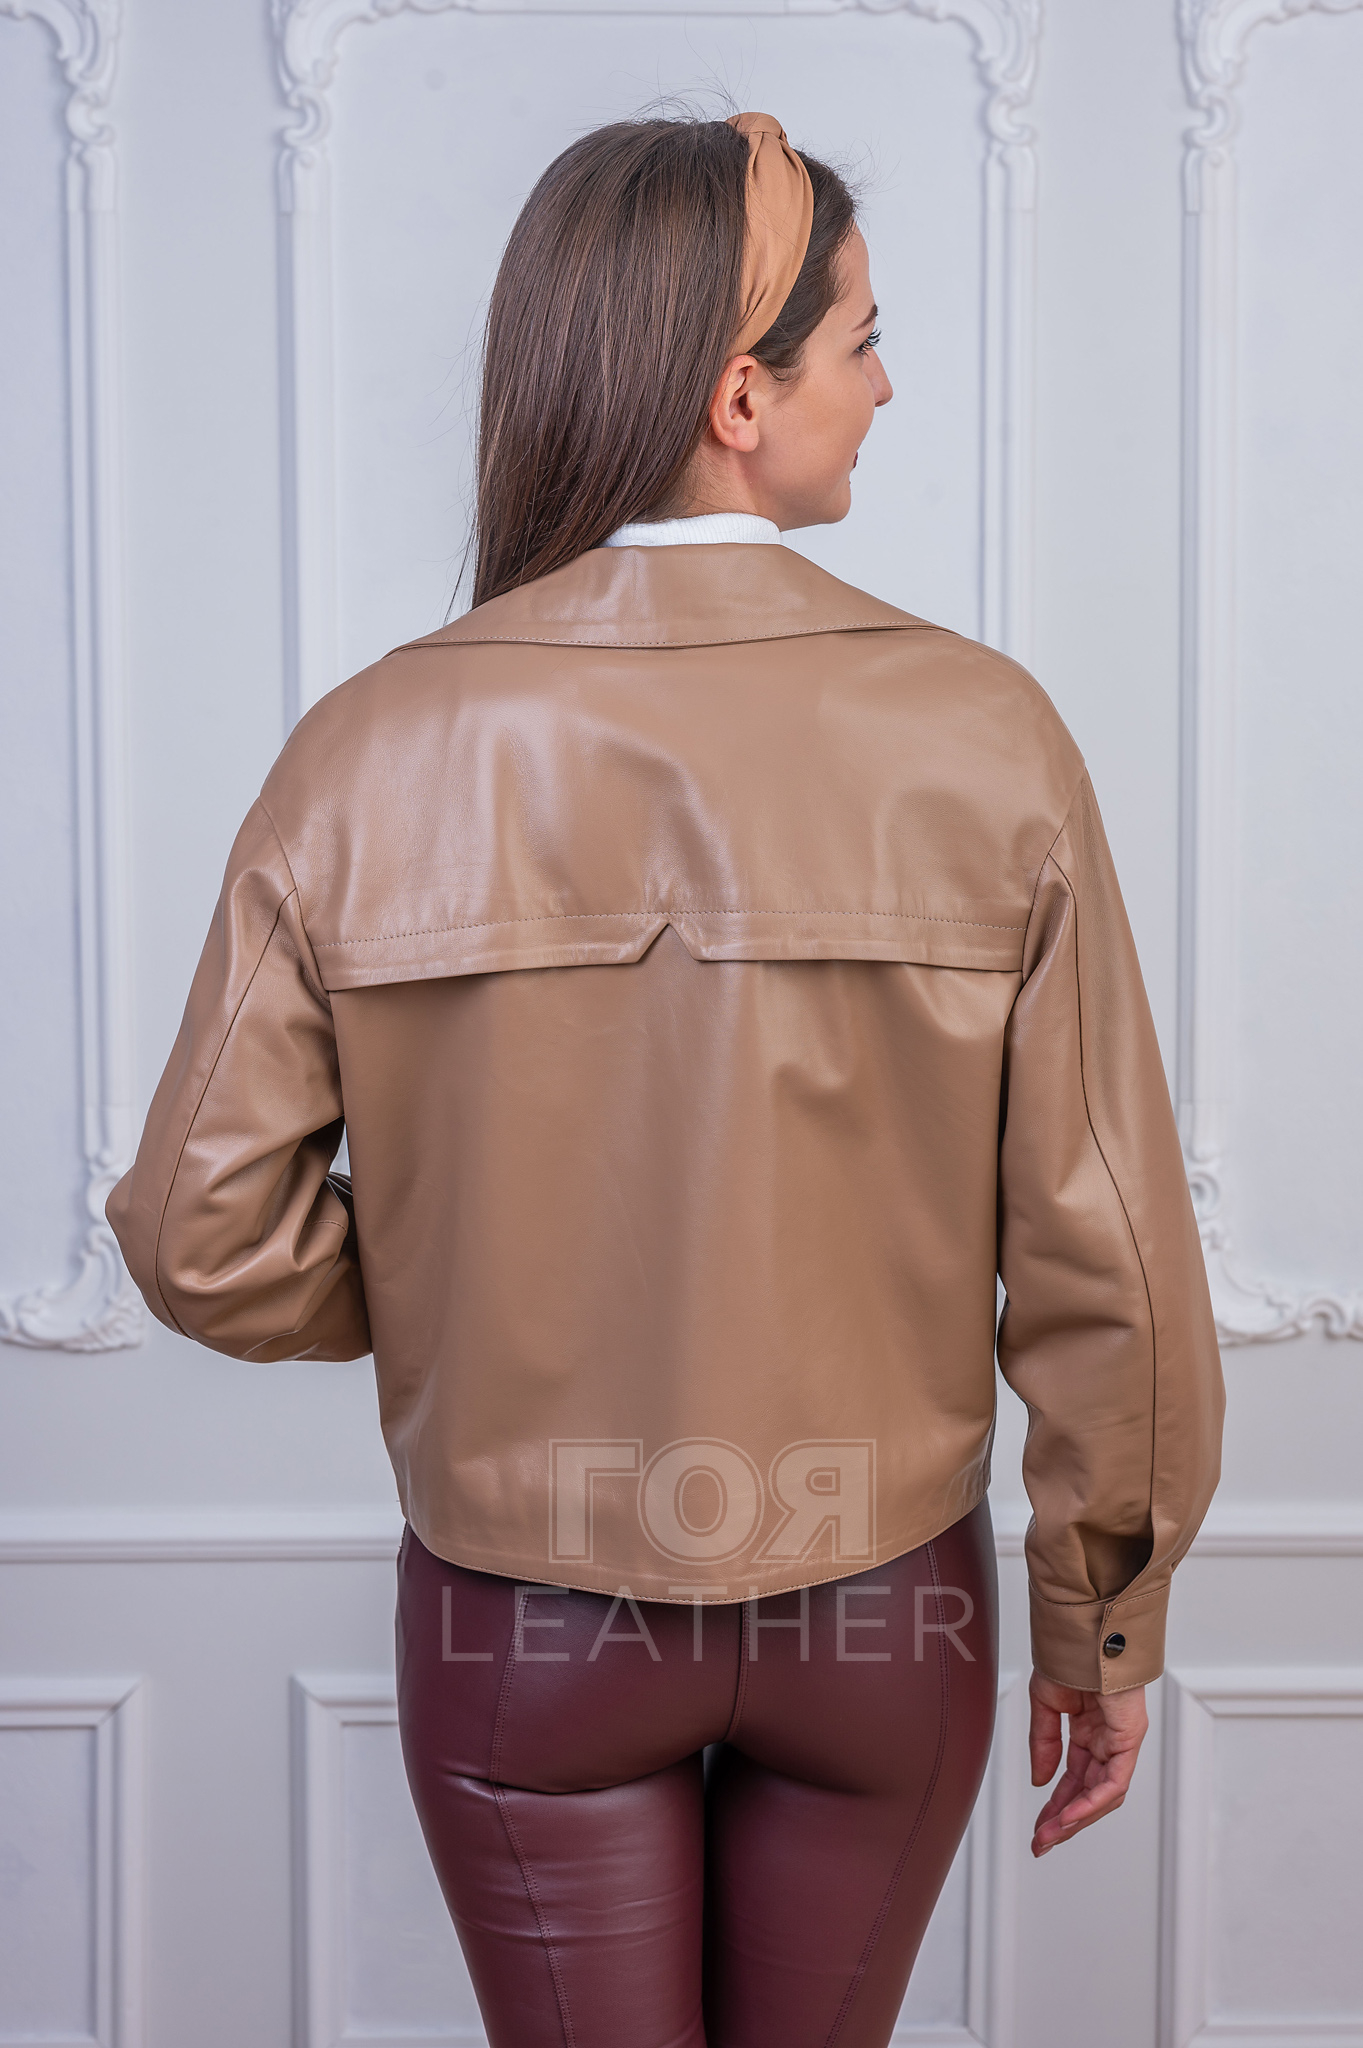 Дамско късо кожено яке оверсайз. Нов модел от ГОЯ Leather в стил оверсайз. Къс модел със свободна койка подходящо за сезон пролет-есен.